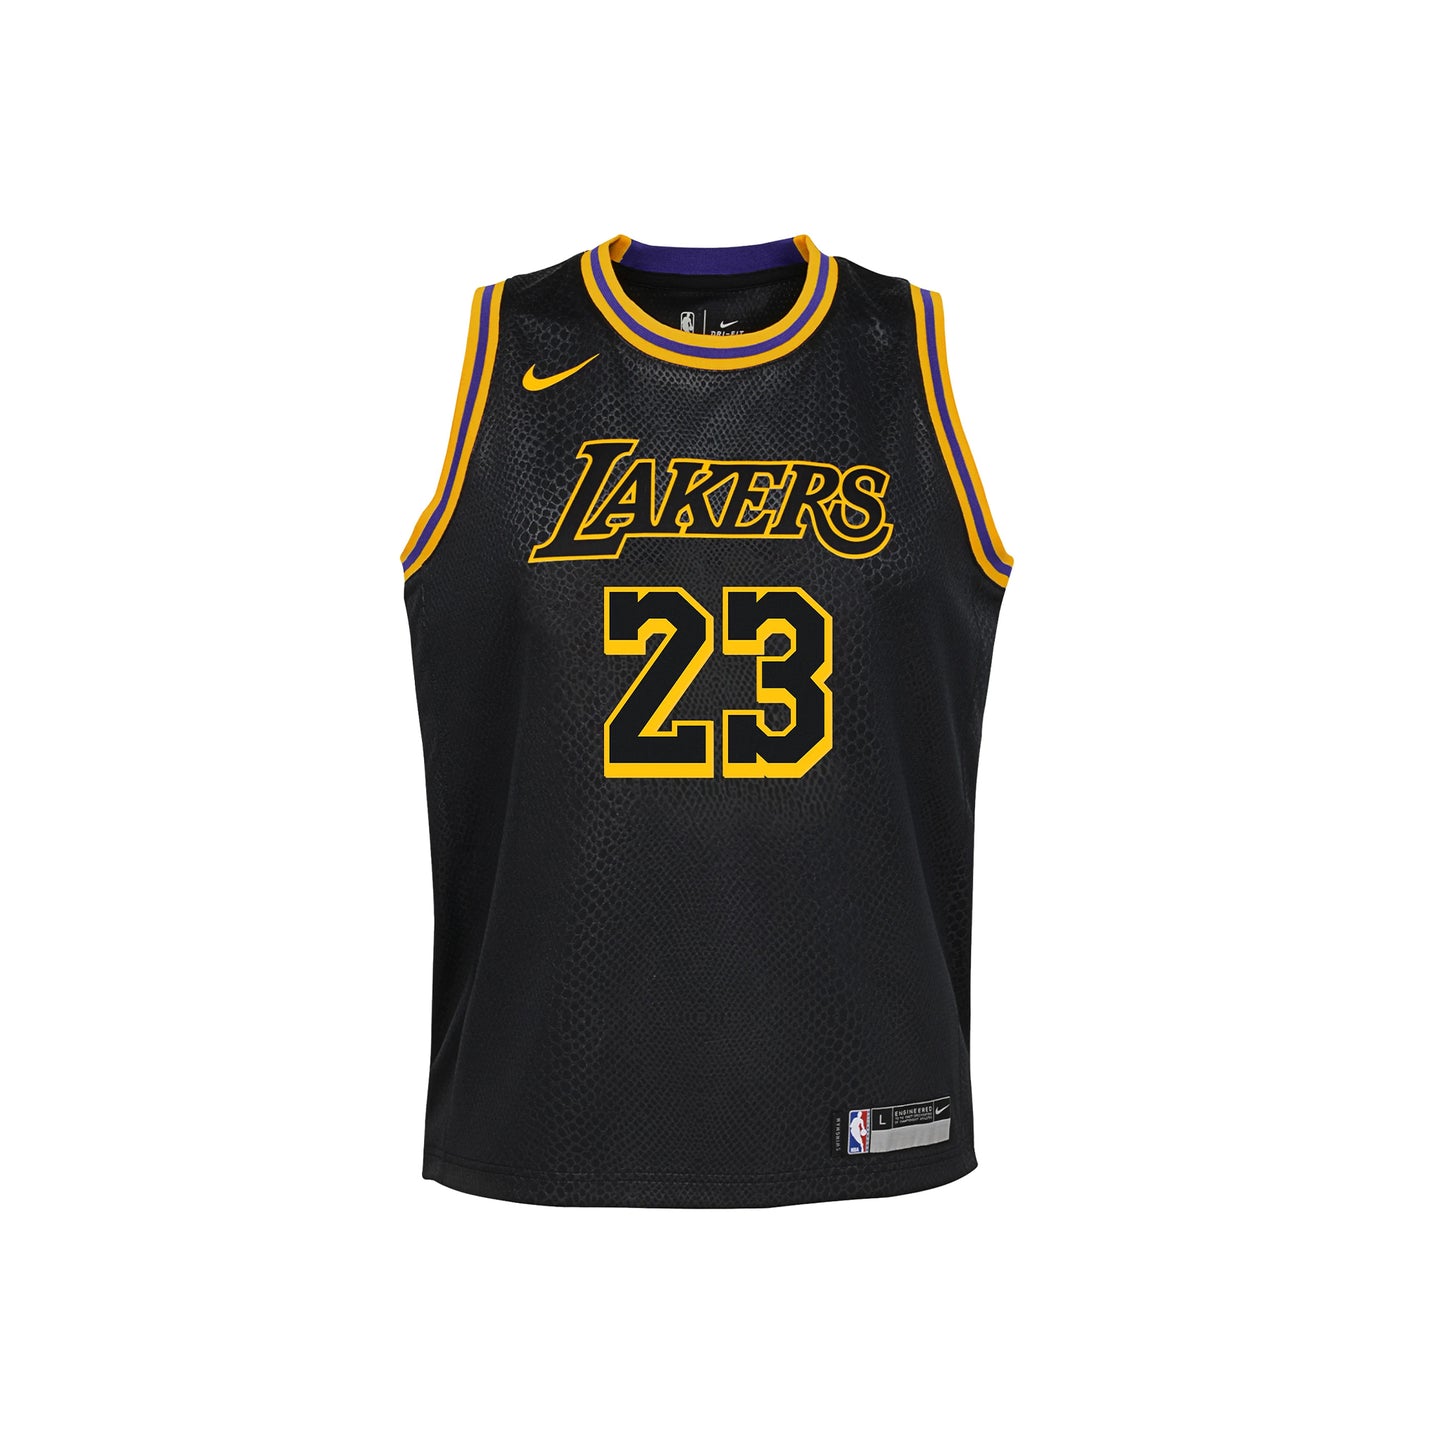 Nike NBA LeBron James Lakers Swingman Jersey - Black, Size: L